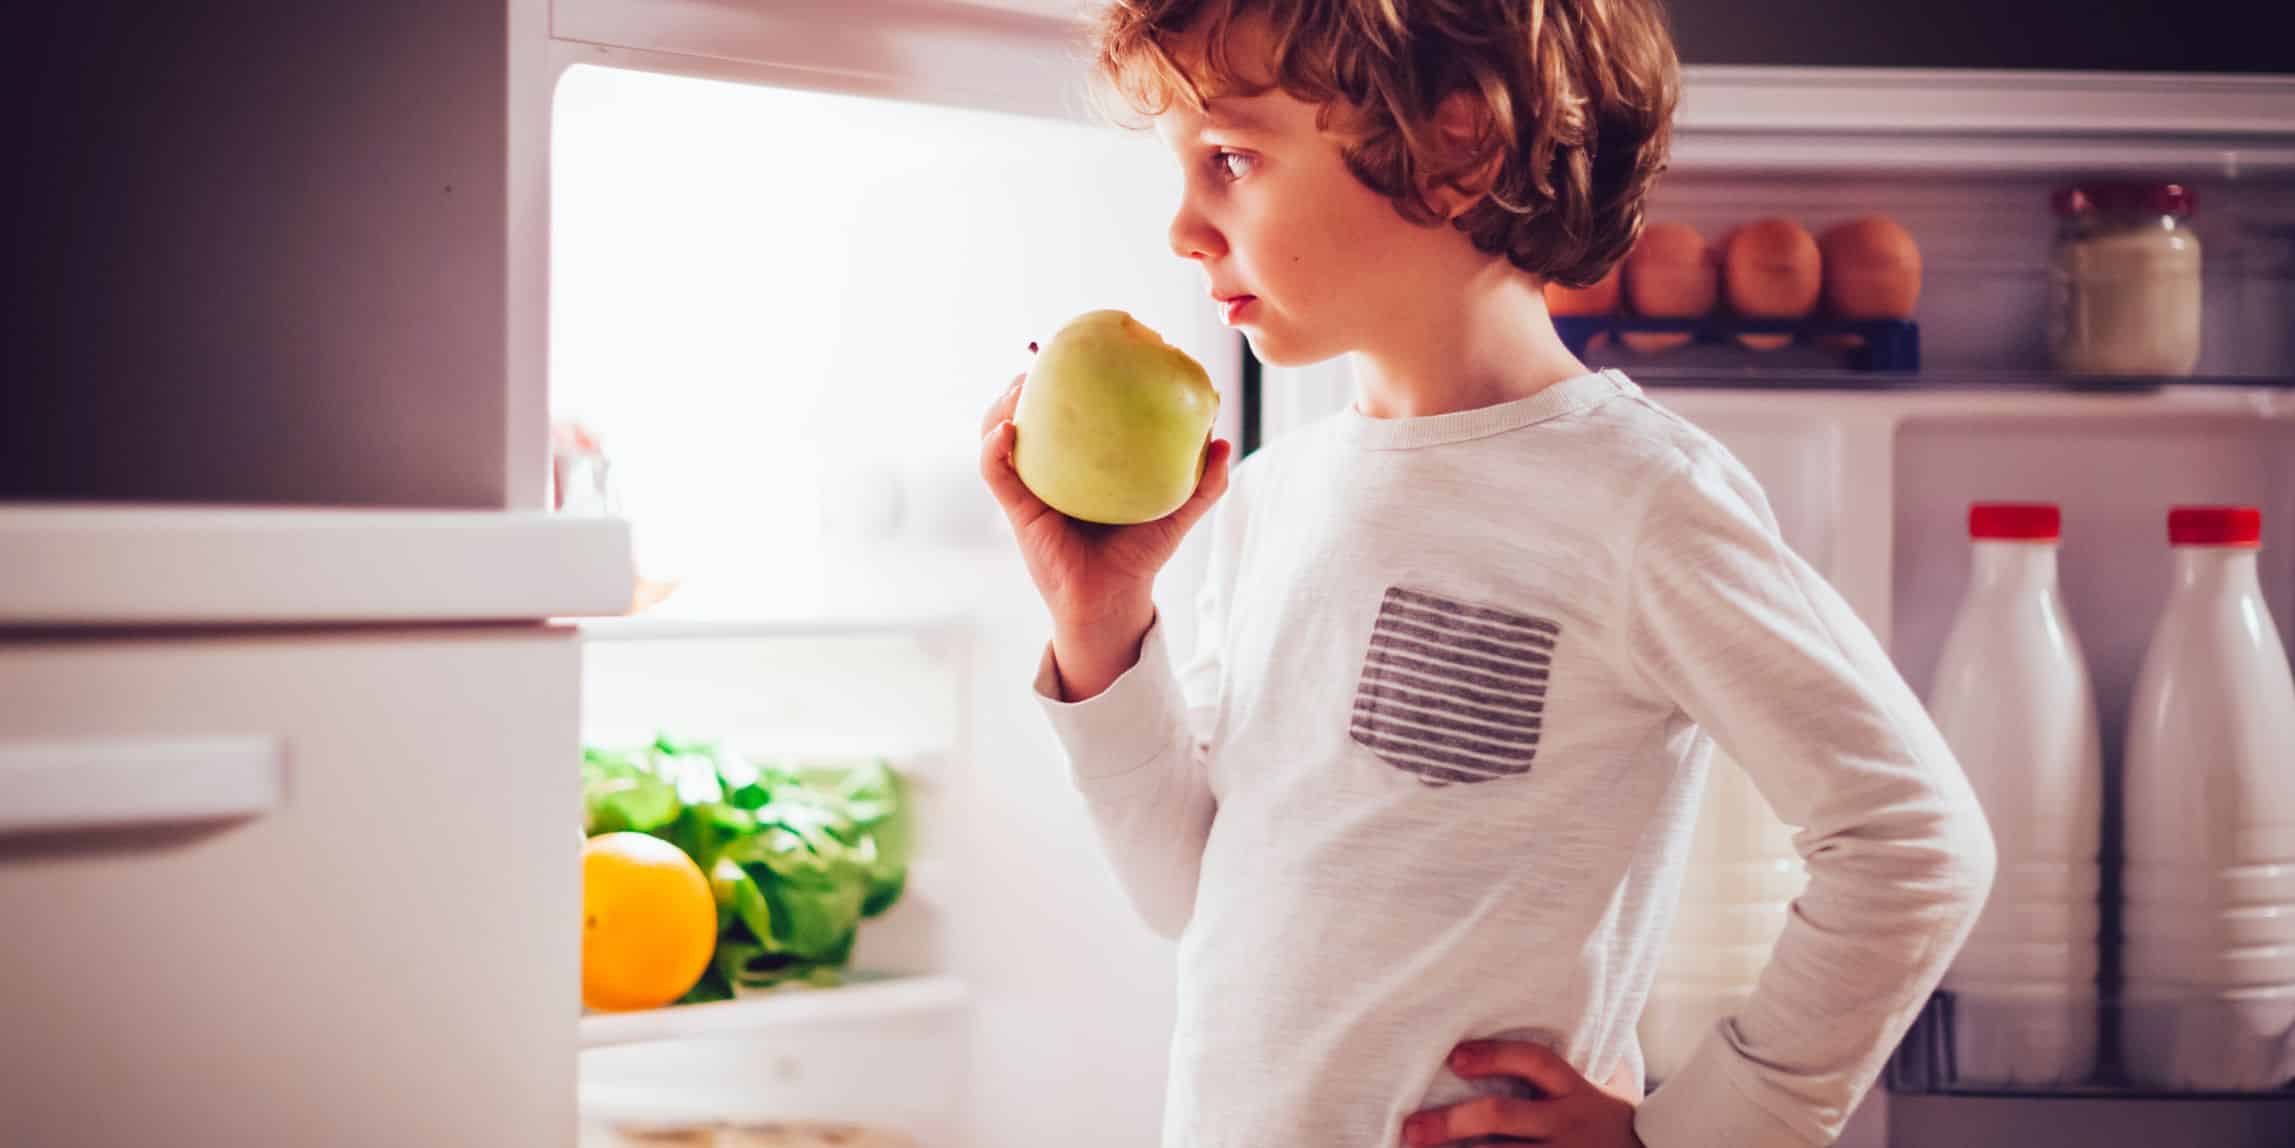 boy having a bedtime snack of an apple in his pajamas standing in the open door of the fridge